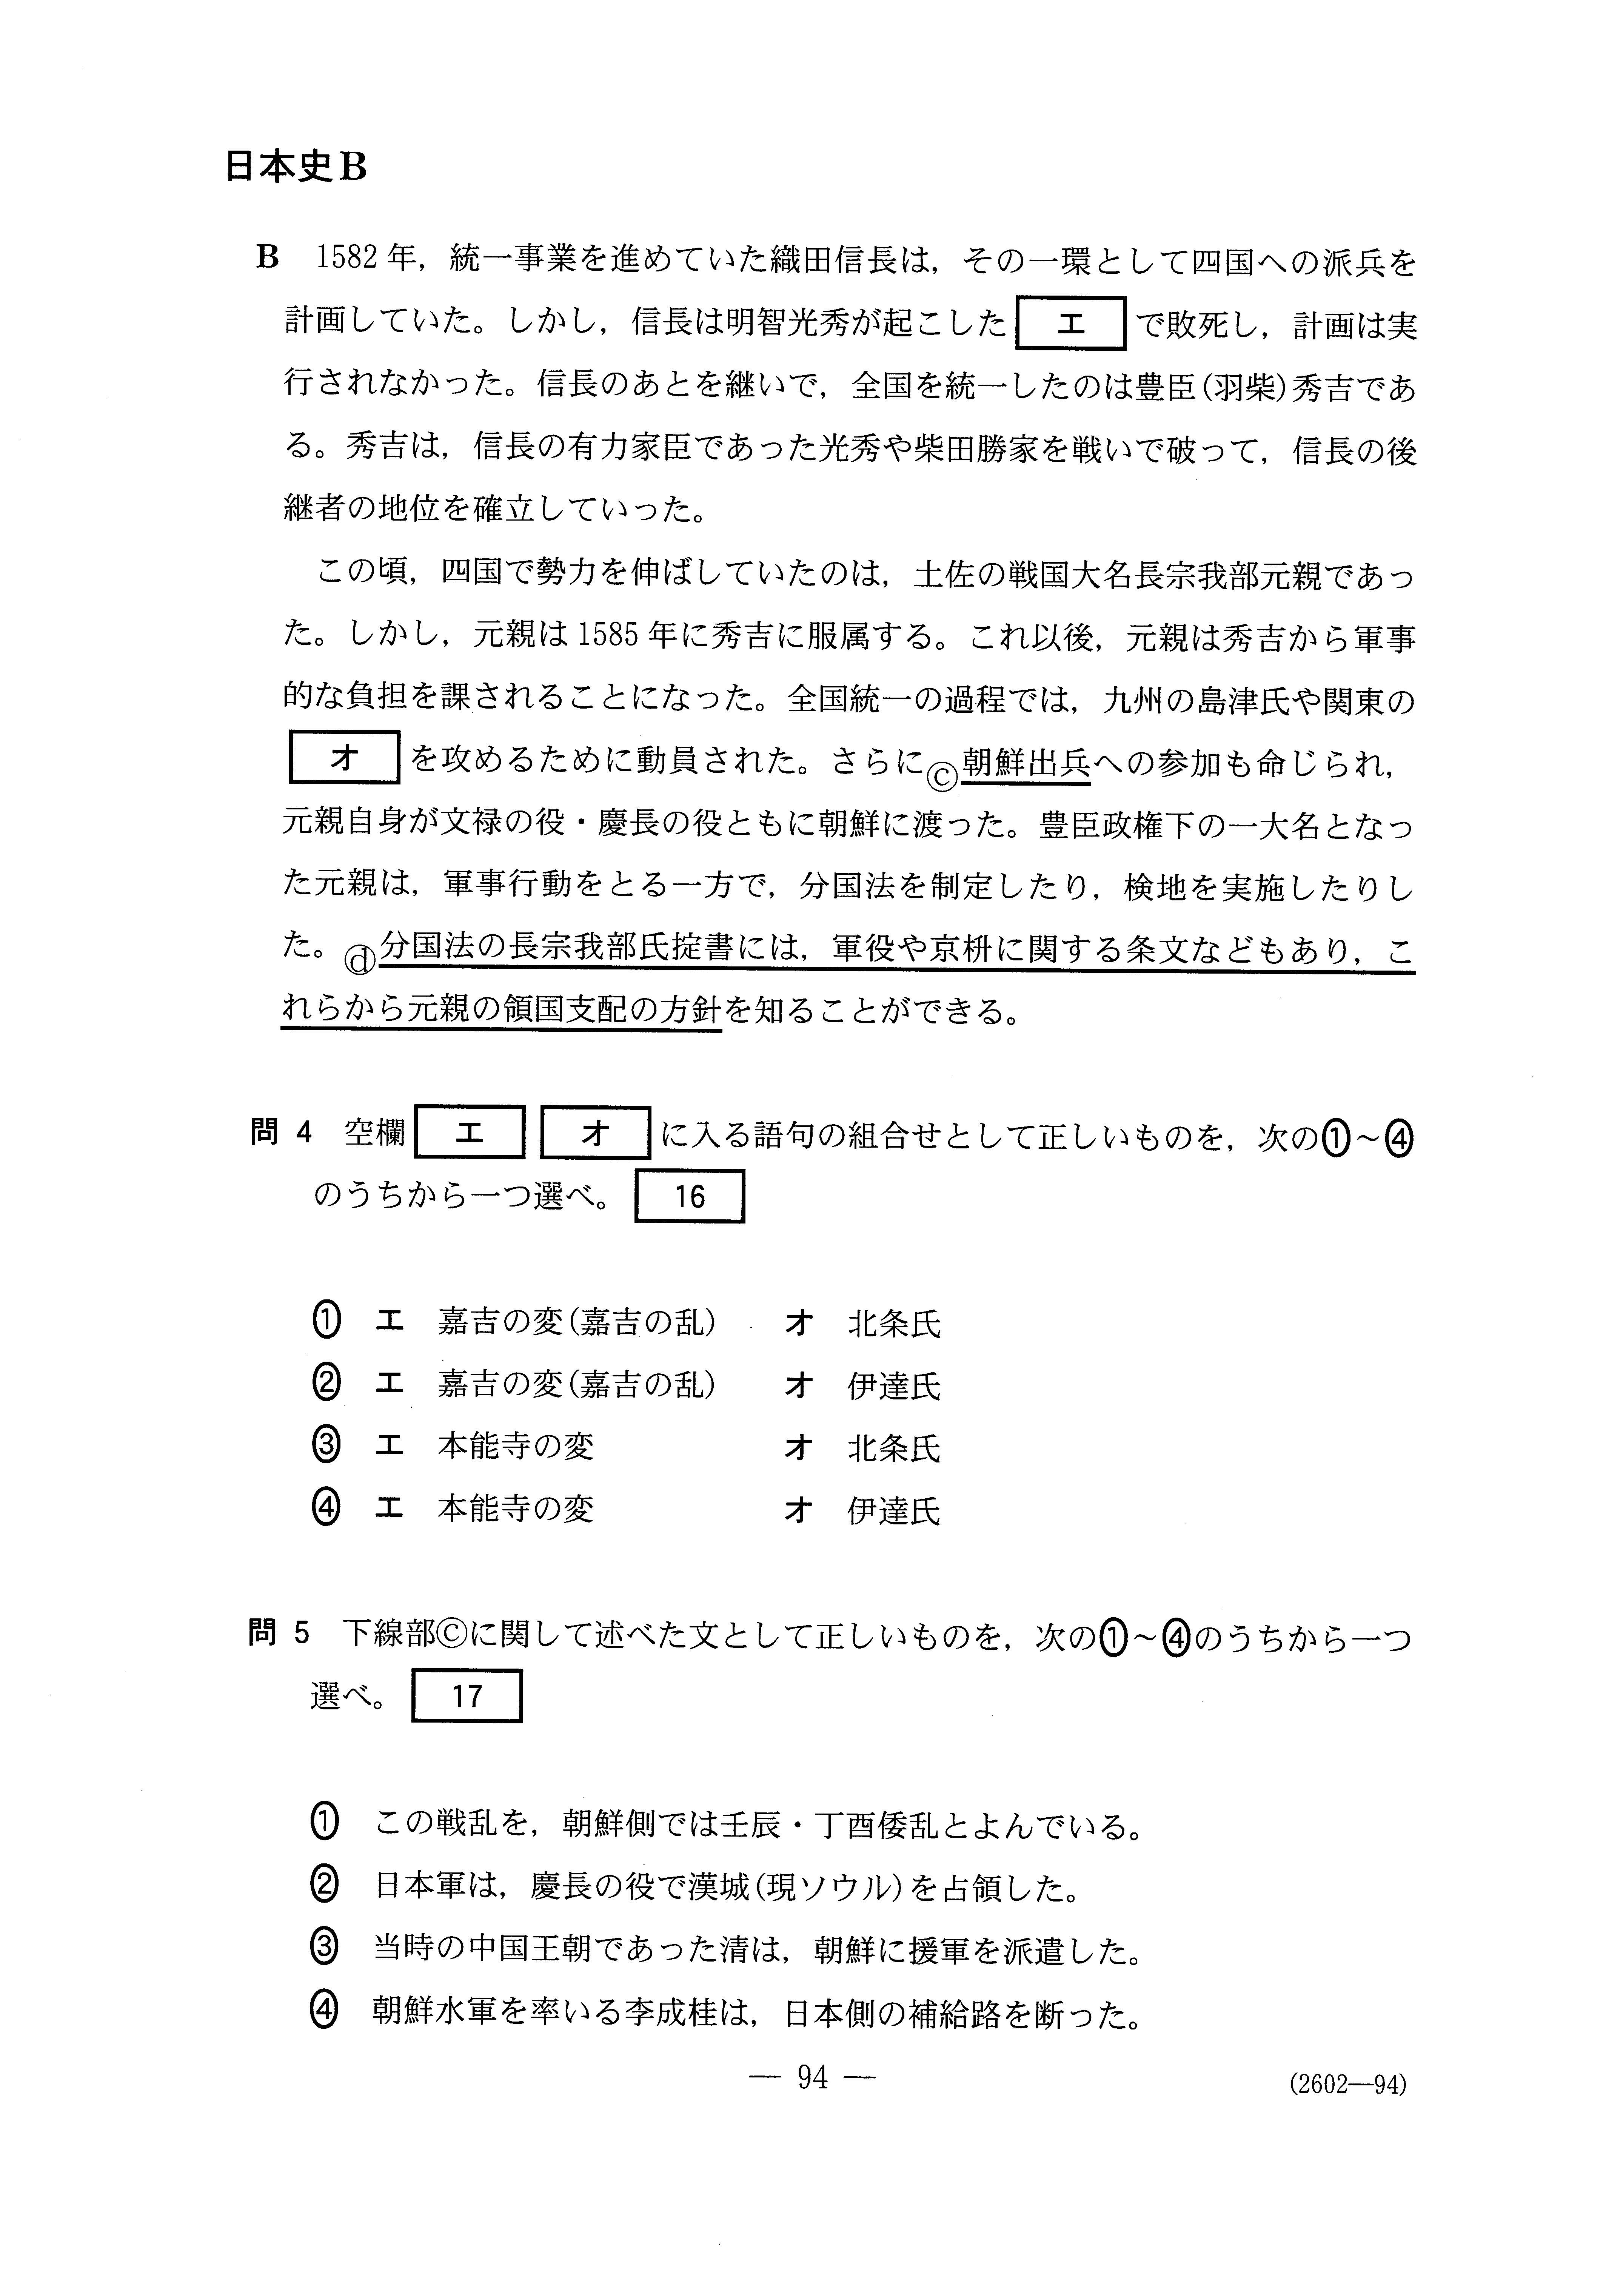 2015年 平成27年日本史B 大学入試センター試験過去問解答